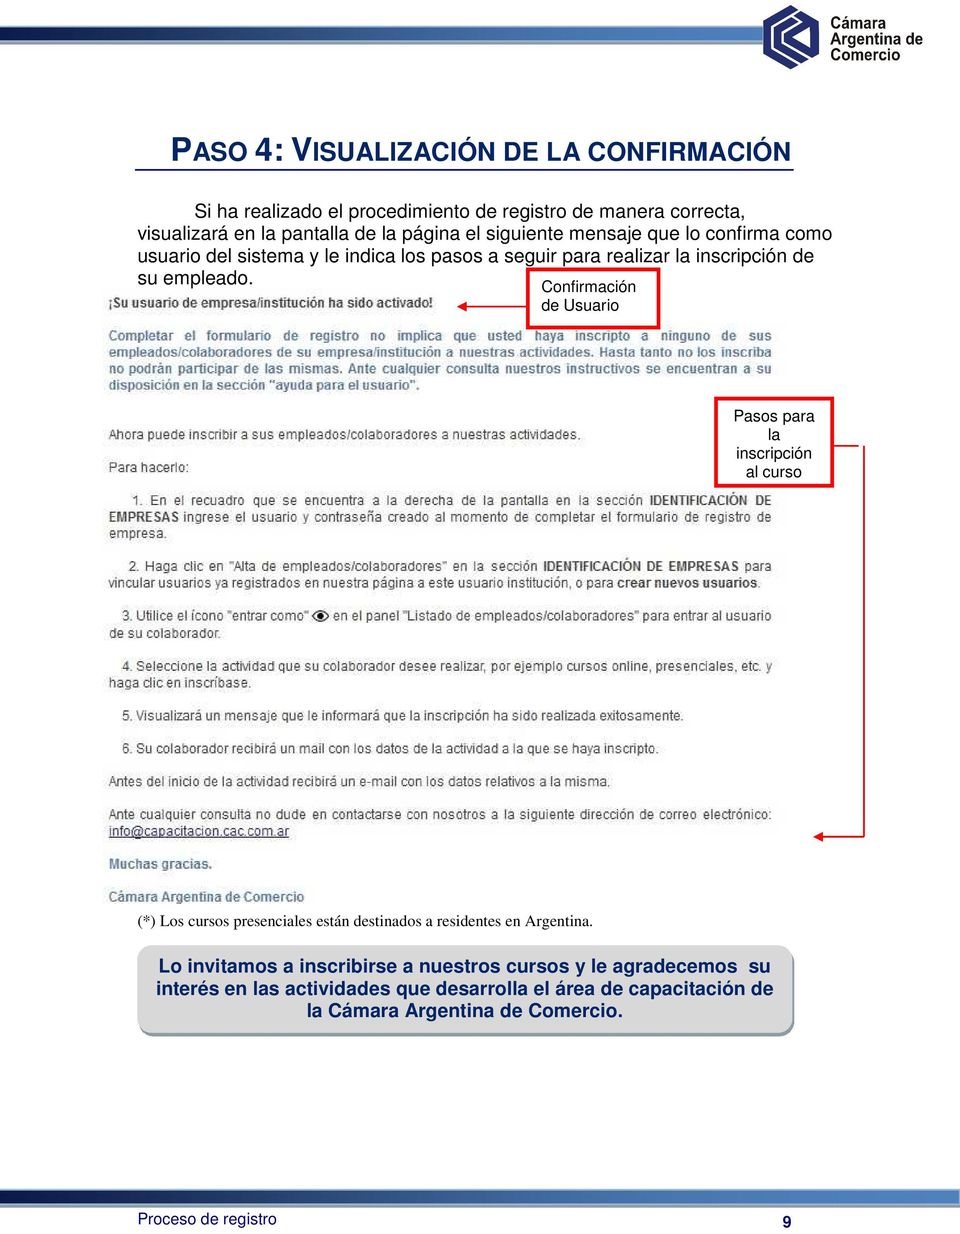 Confirmación de Usuario Pasos para la inscripción al curso (*) Los cursos presenciales están destinados a residentes en Argentina.